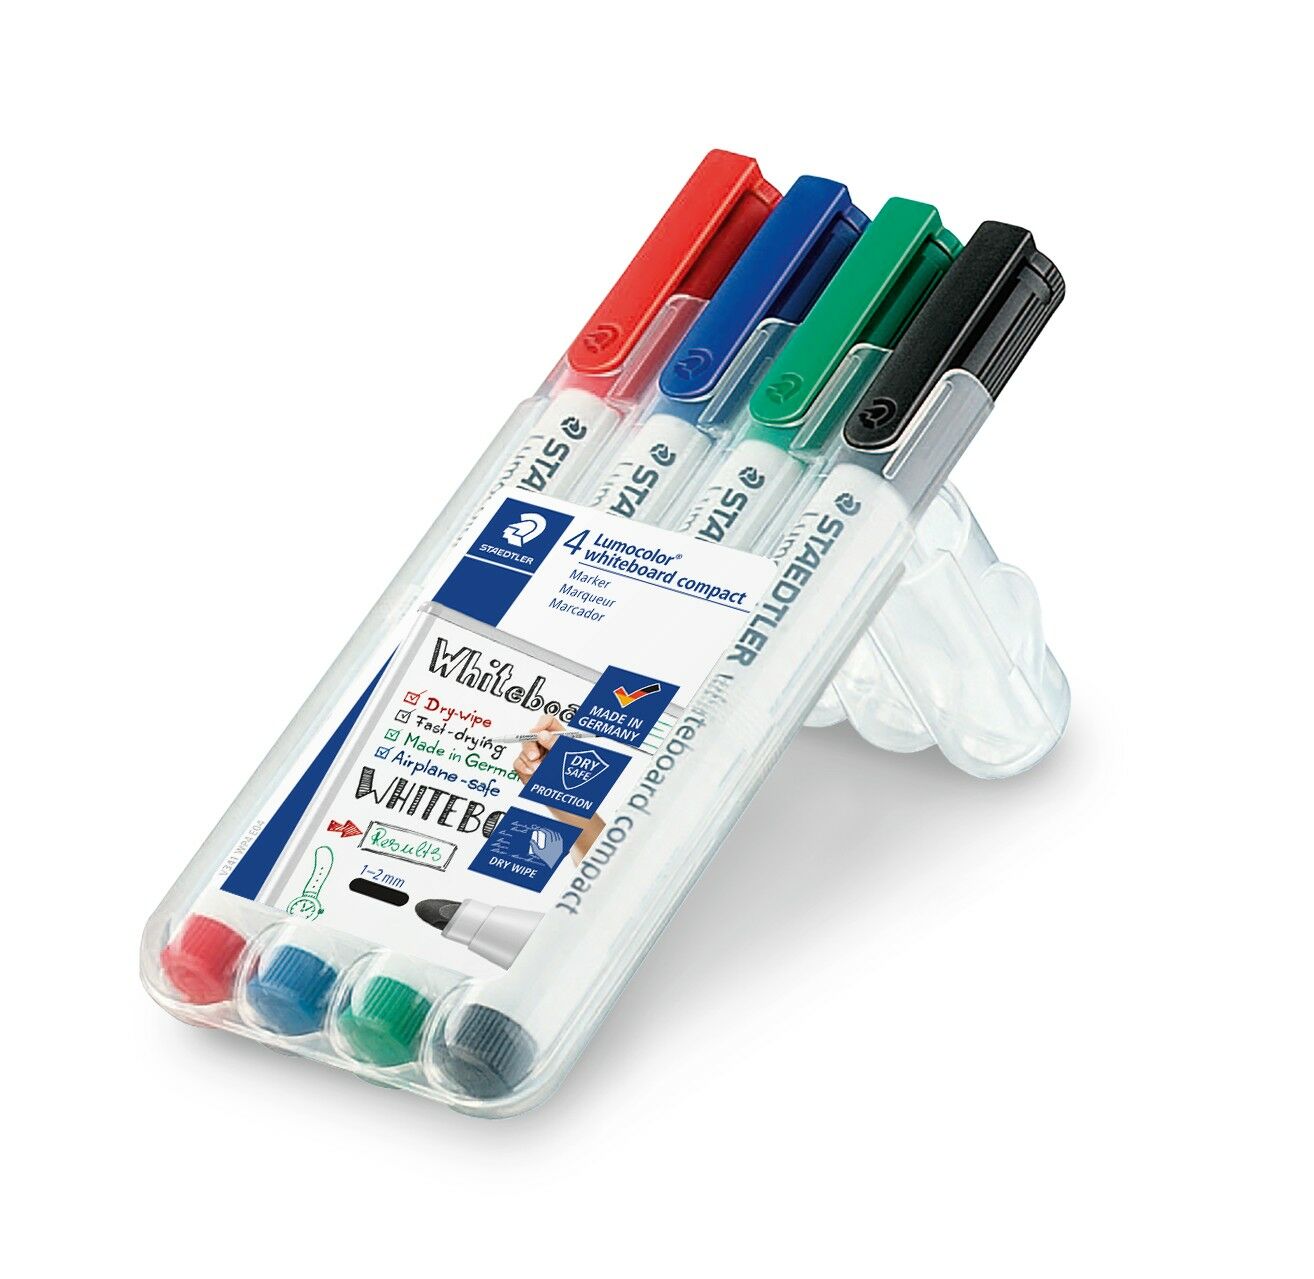 Lumocolor® whiteboard compact 341 - Marcador de pizarra blanca compacto